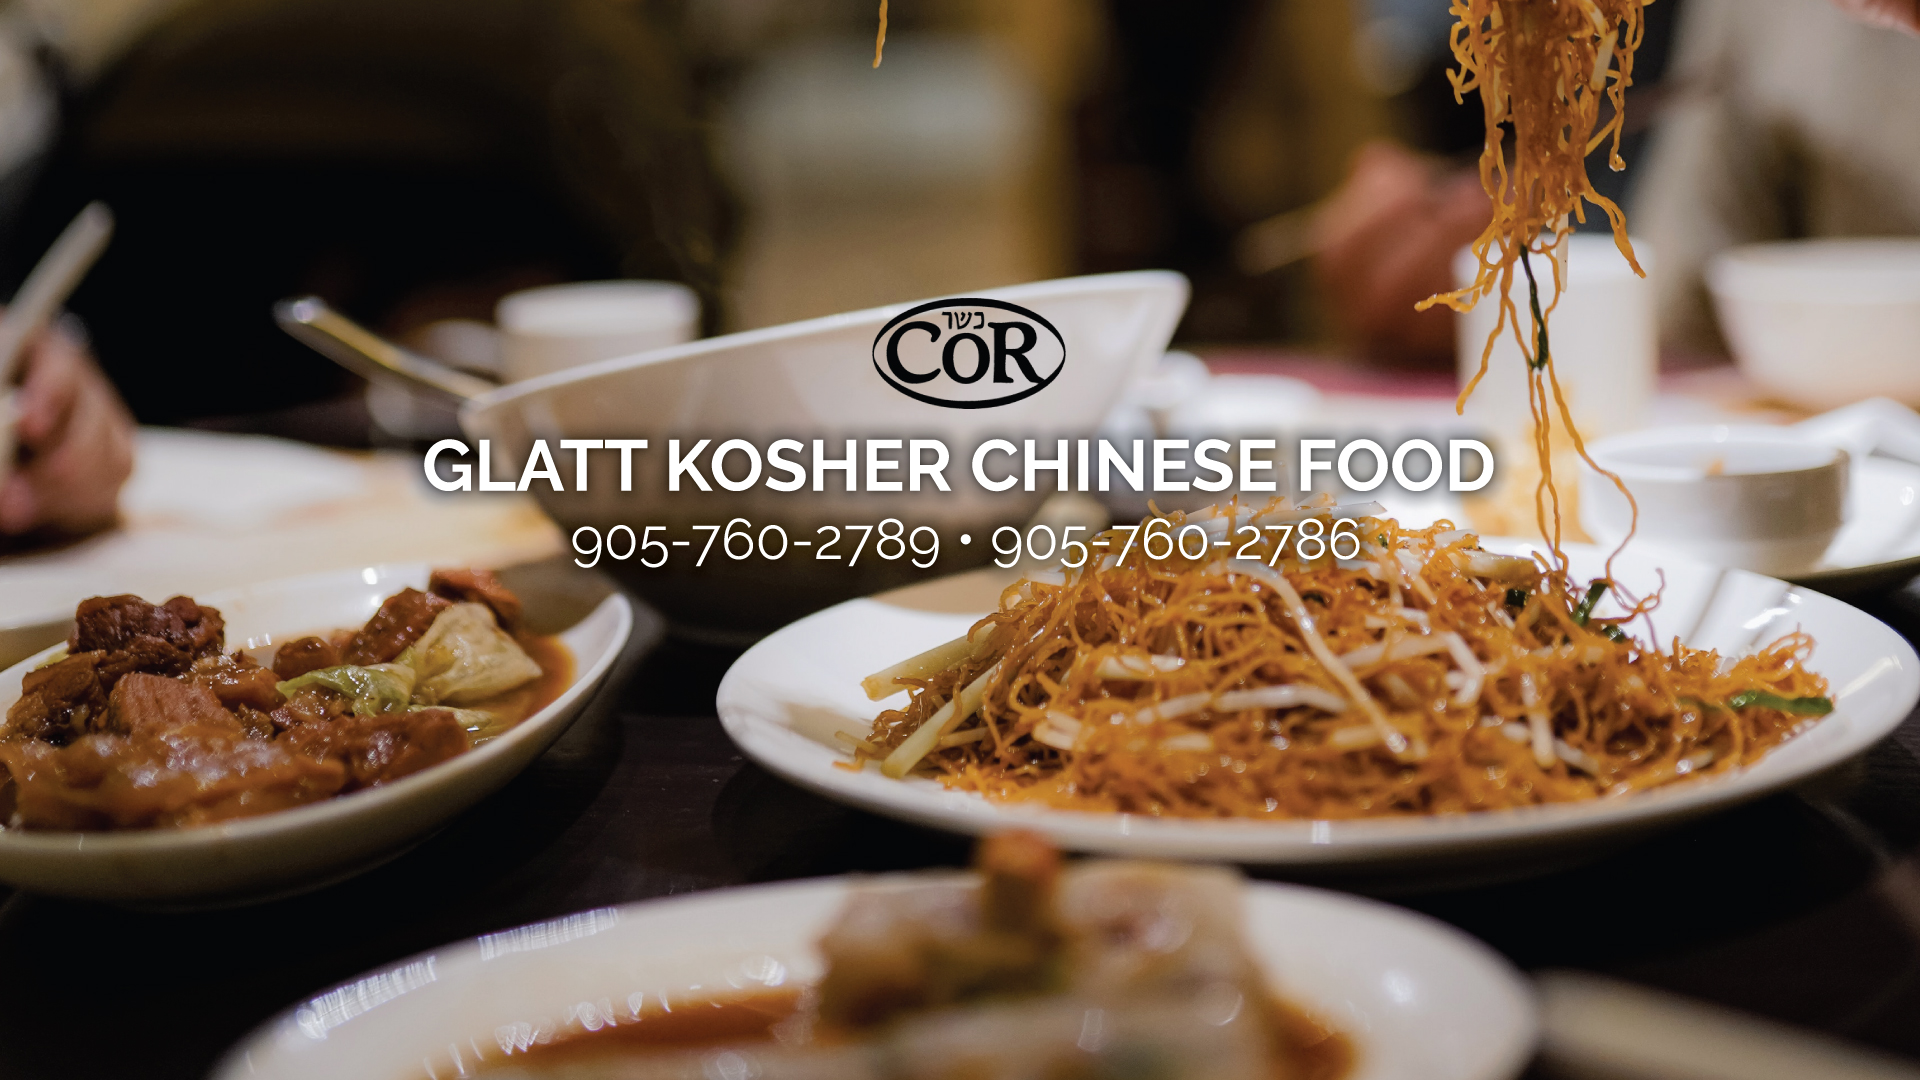 Chop Chop  Glatt Kosher Chinese, Sushi & Catering